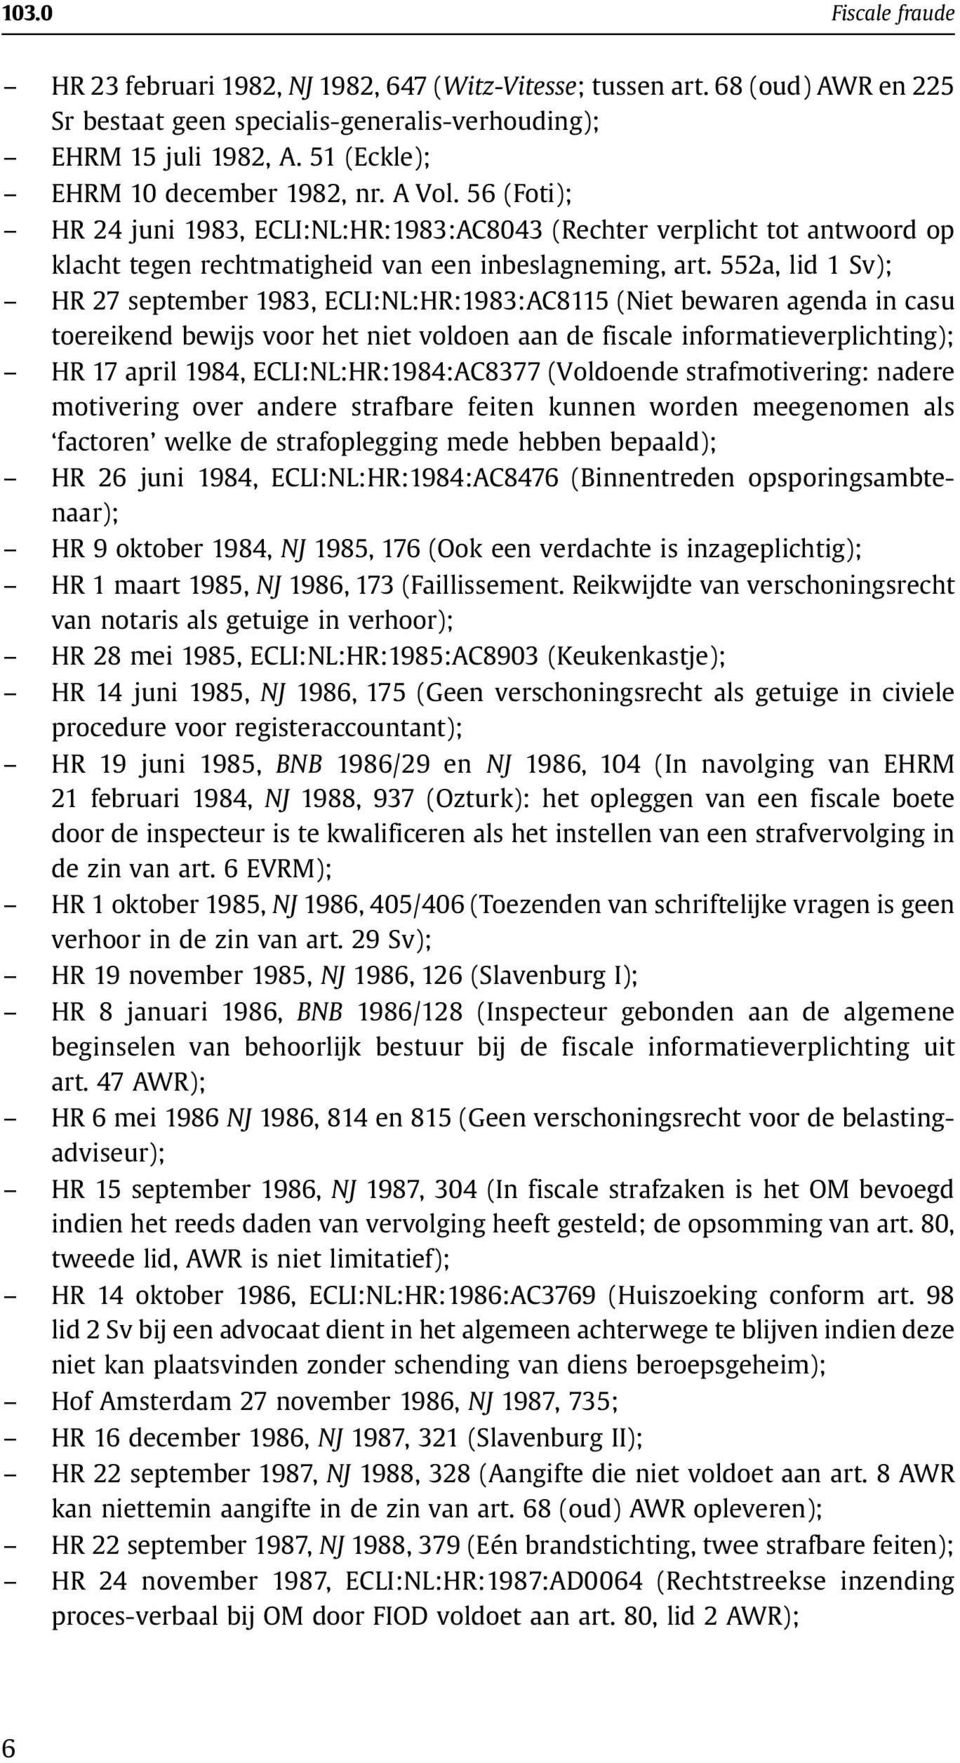 552a, lid 1 Sv); HR 27 september 1983, ECLI:NL:HR:1983:AC8115 (Niet bewaren agenda in casu toereikend bewijs voor het niet voldoen aan de fiscale informatieverplichting); HR 17 april 1984,